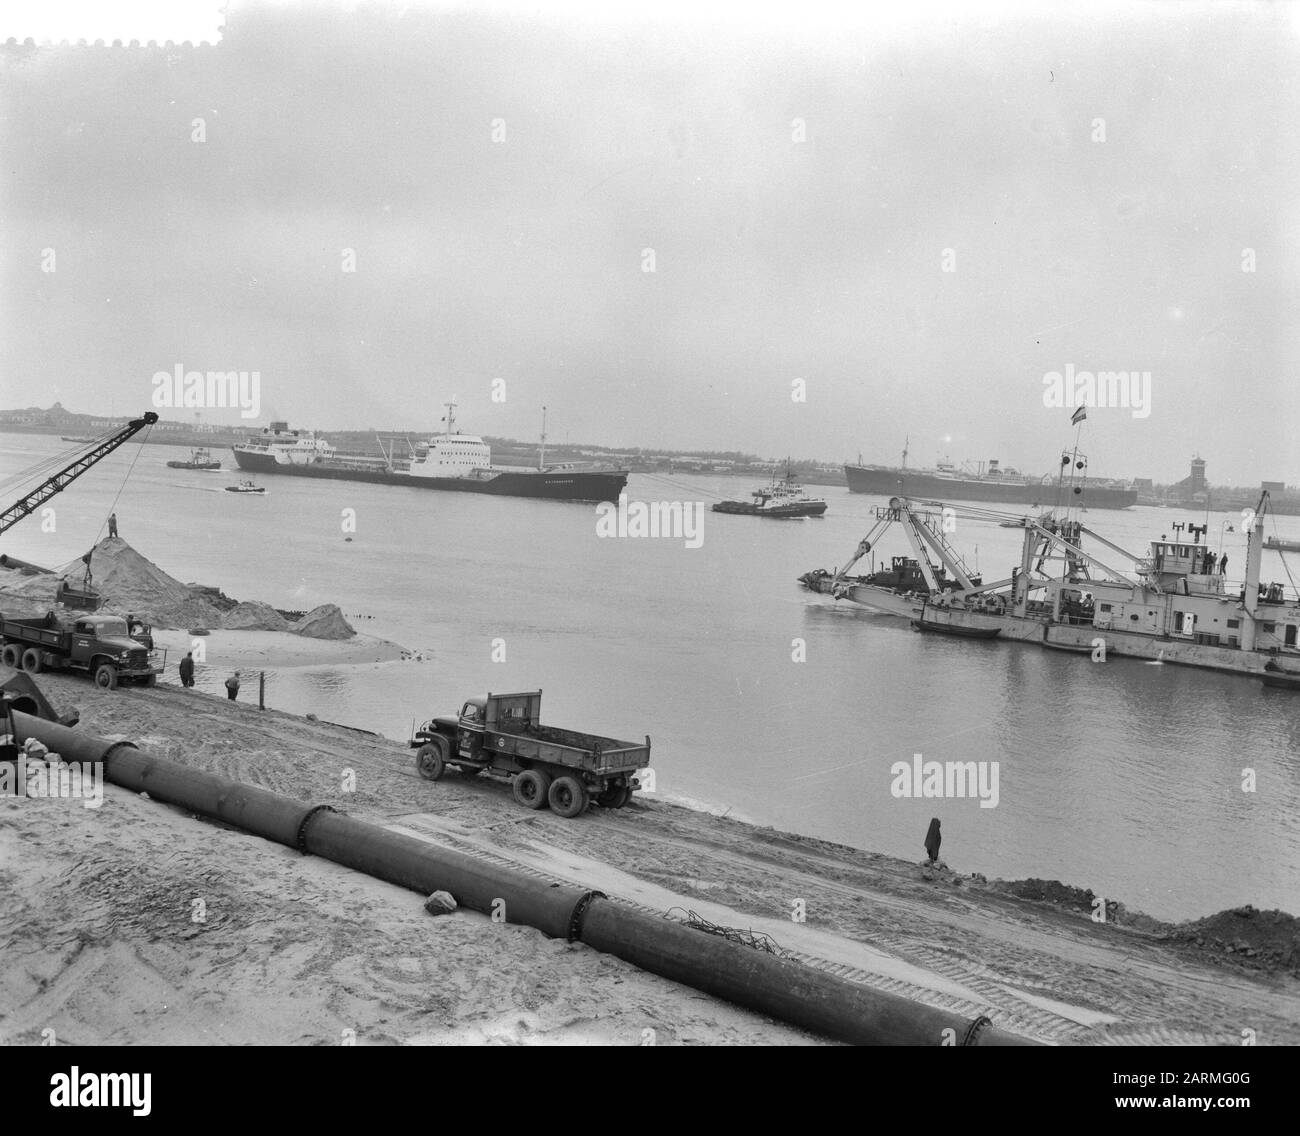 Le premier pétrolier navigue dans le port d'Europoort Date: 13 décembre 1960 mots clés: Pétroliers pétroliers Banque D'Images